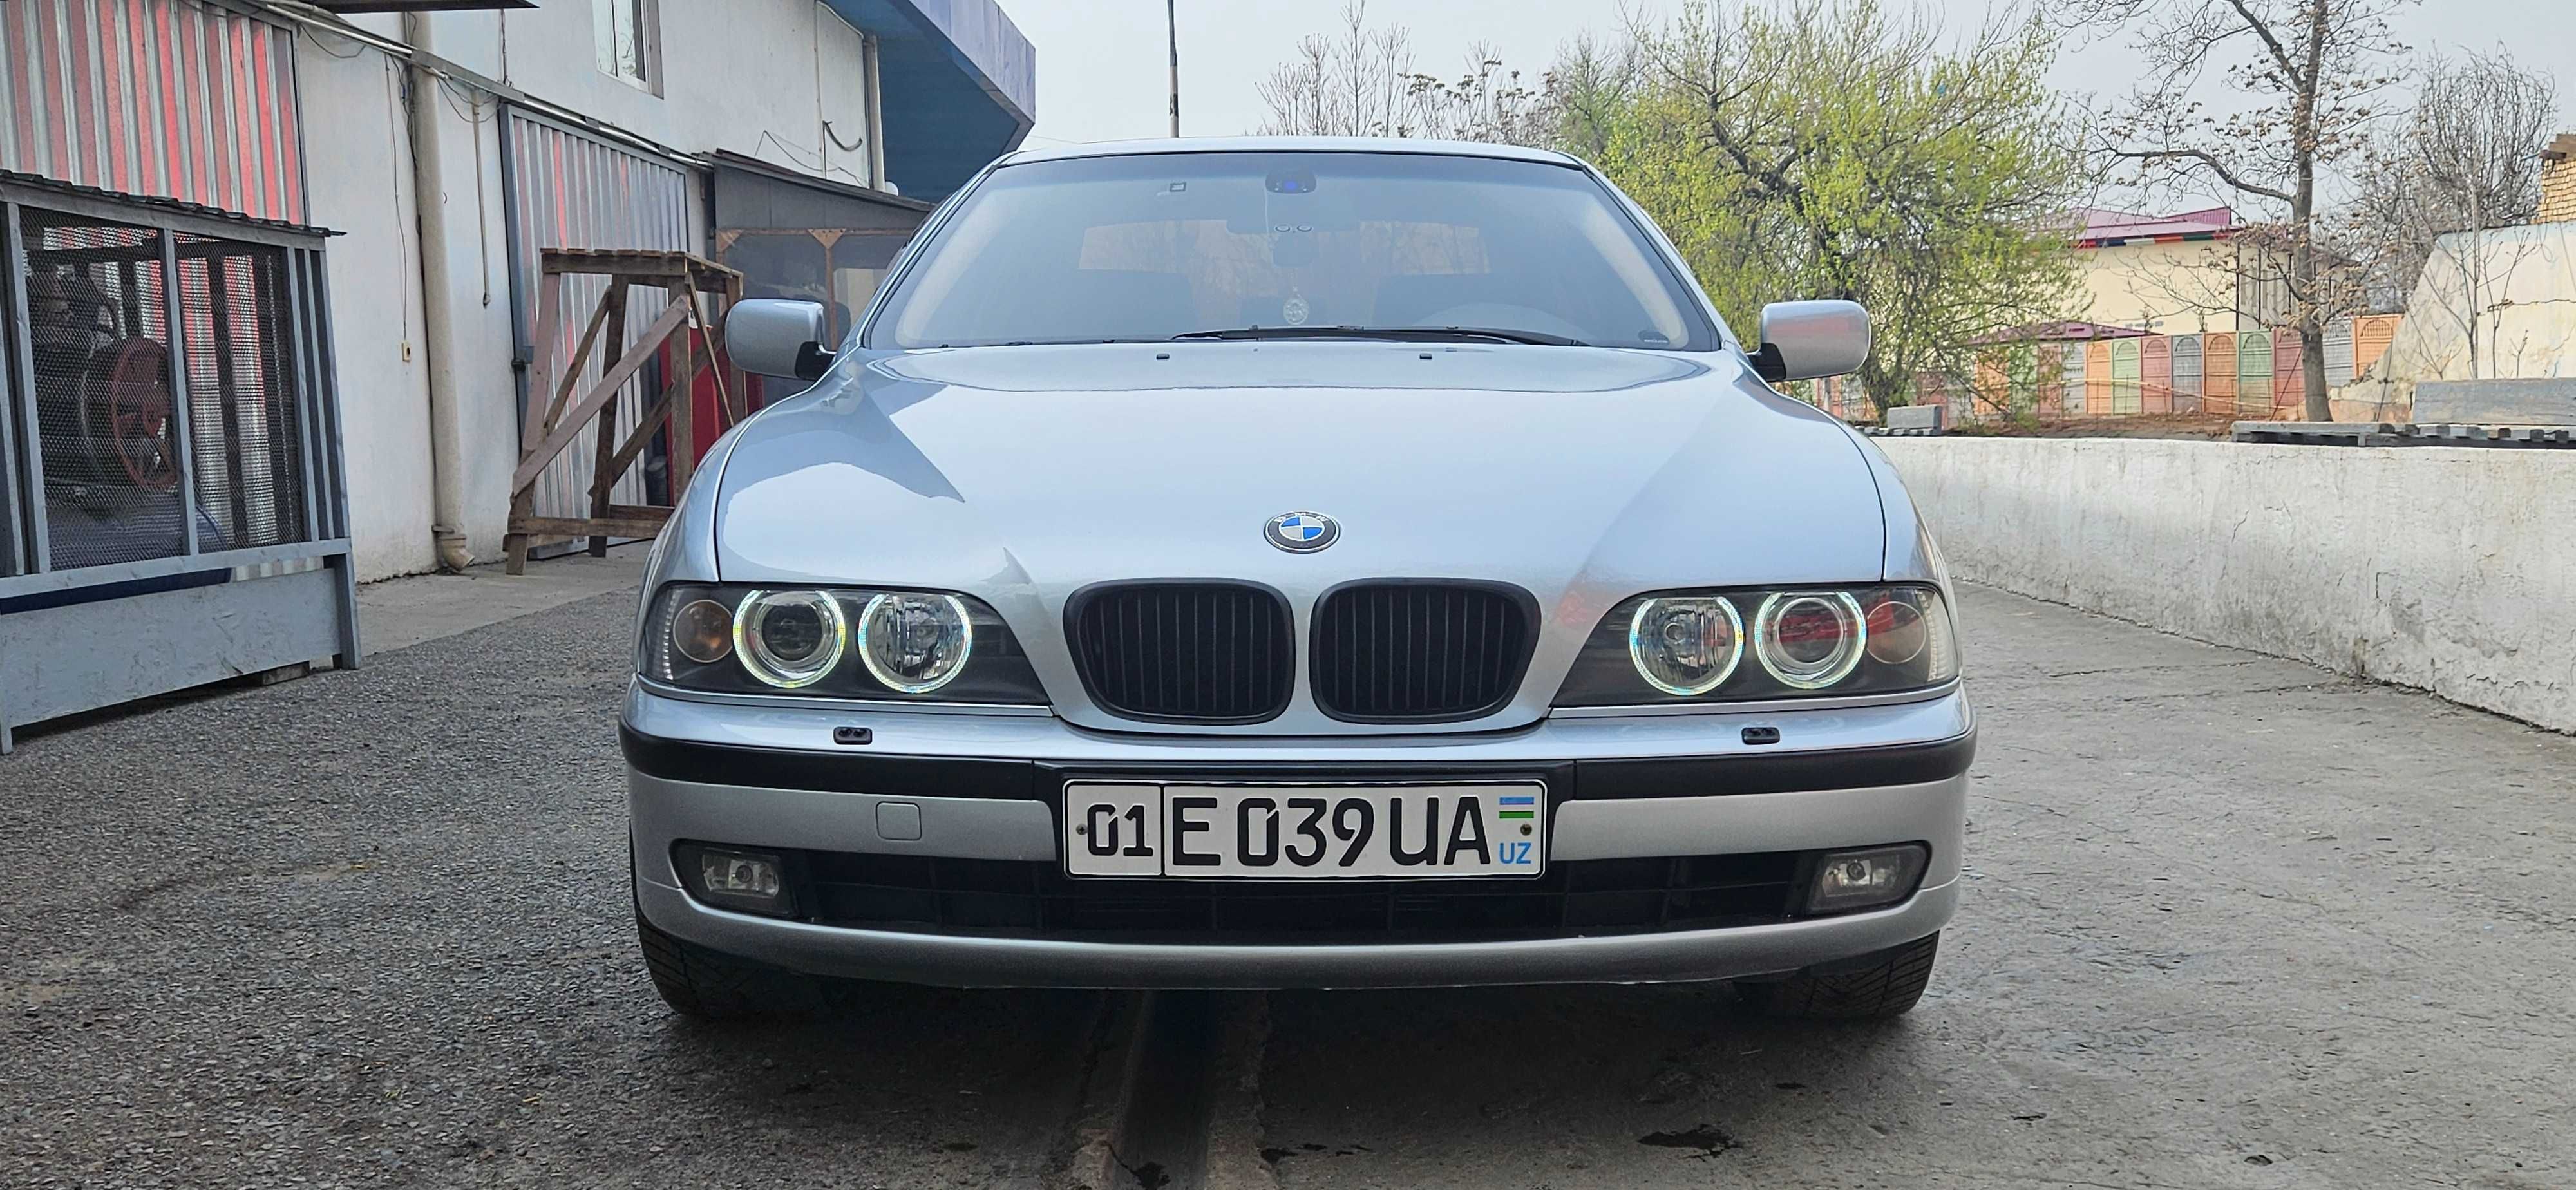 Продаю своя BMW E39